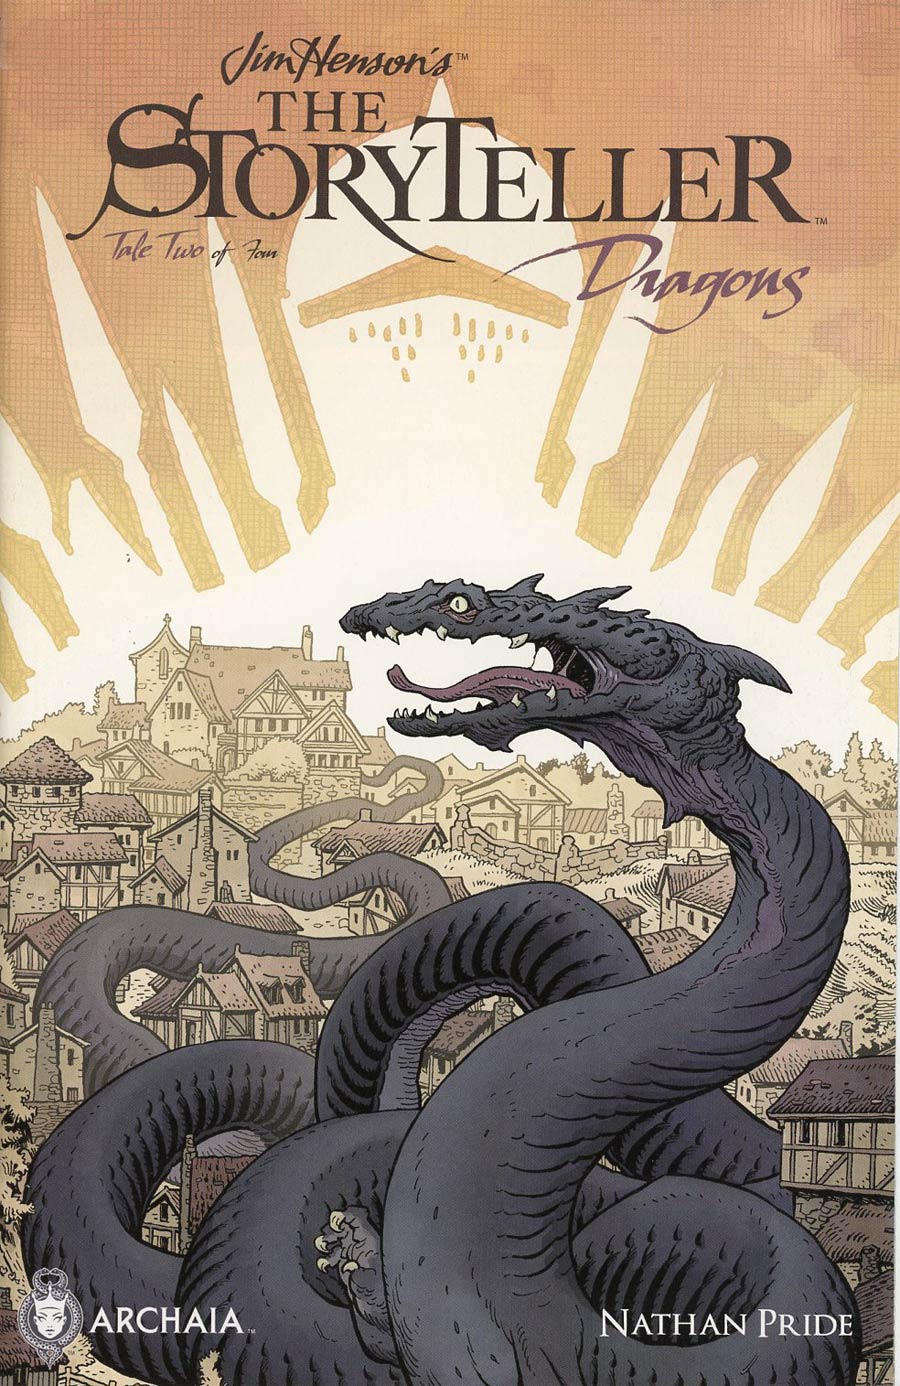 Jim Hensons Storyteller Dragons #2